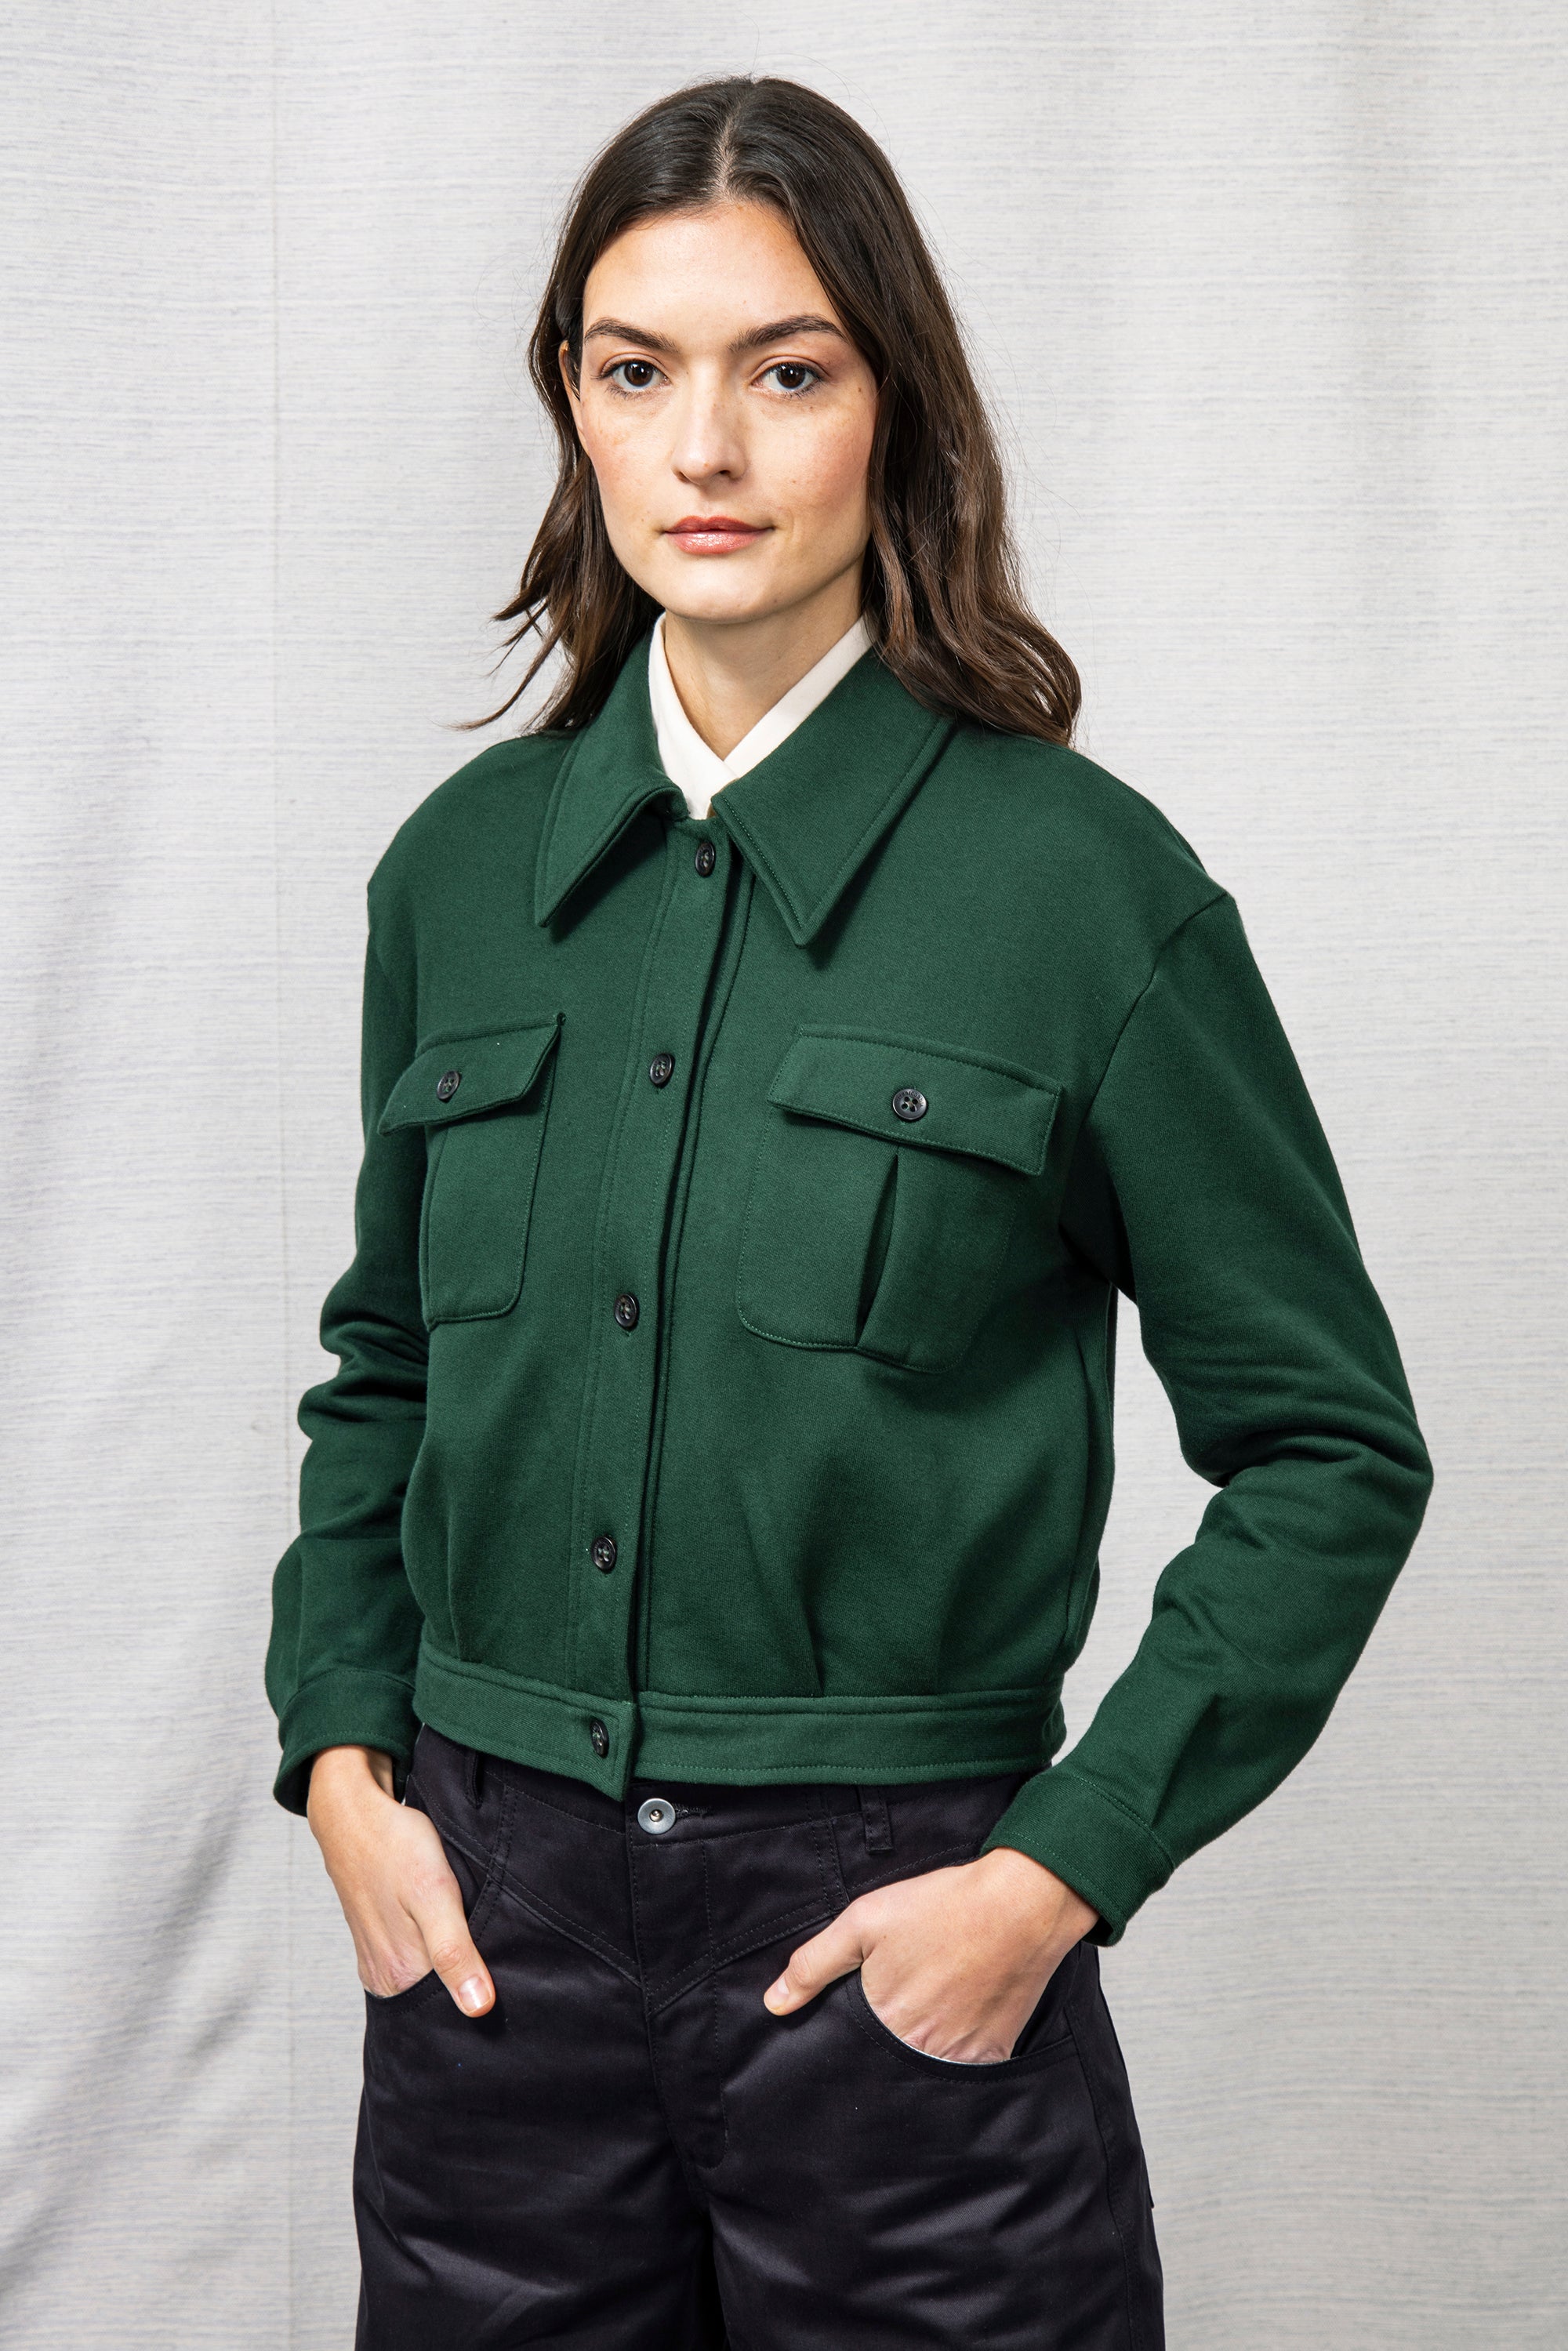 veste femme courte cropped vert sapin vert émeraude profond coton péruvien doux et confortable mi saison printemps été élégant simple